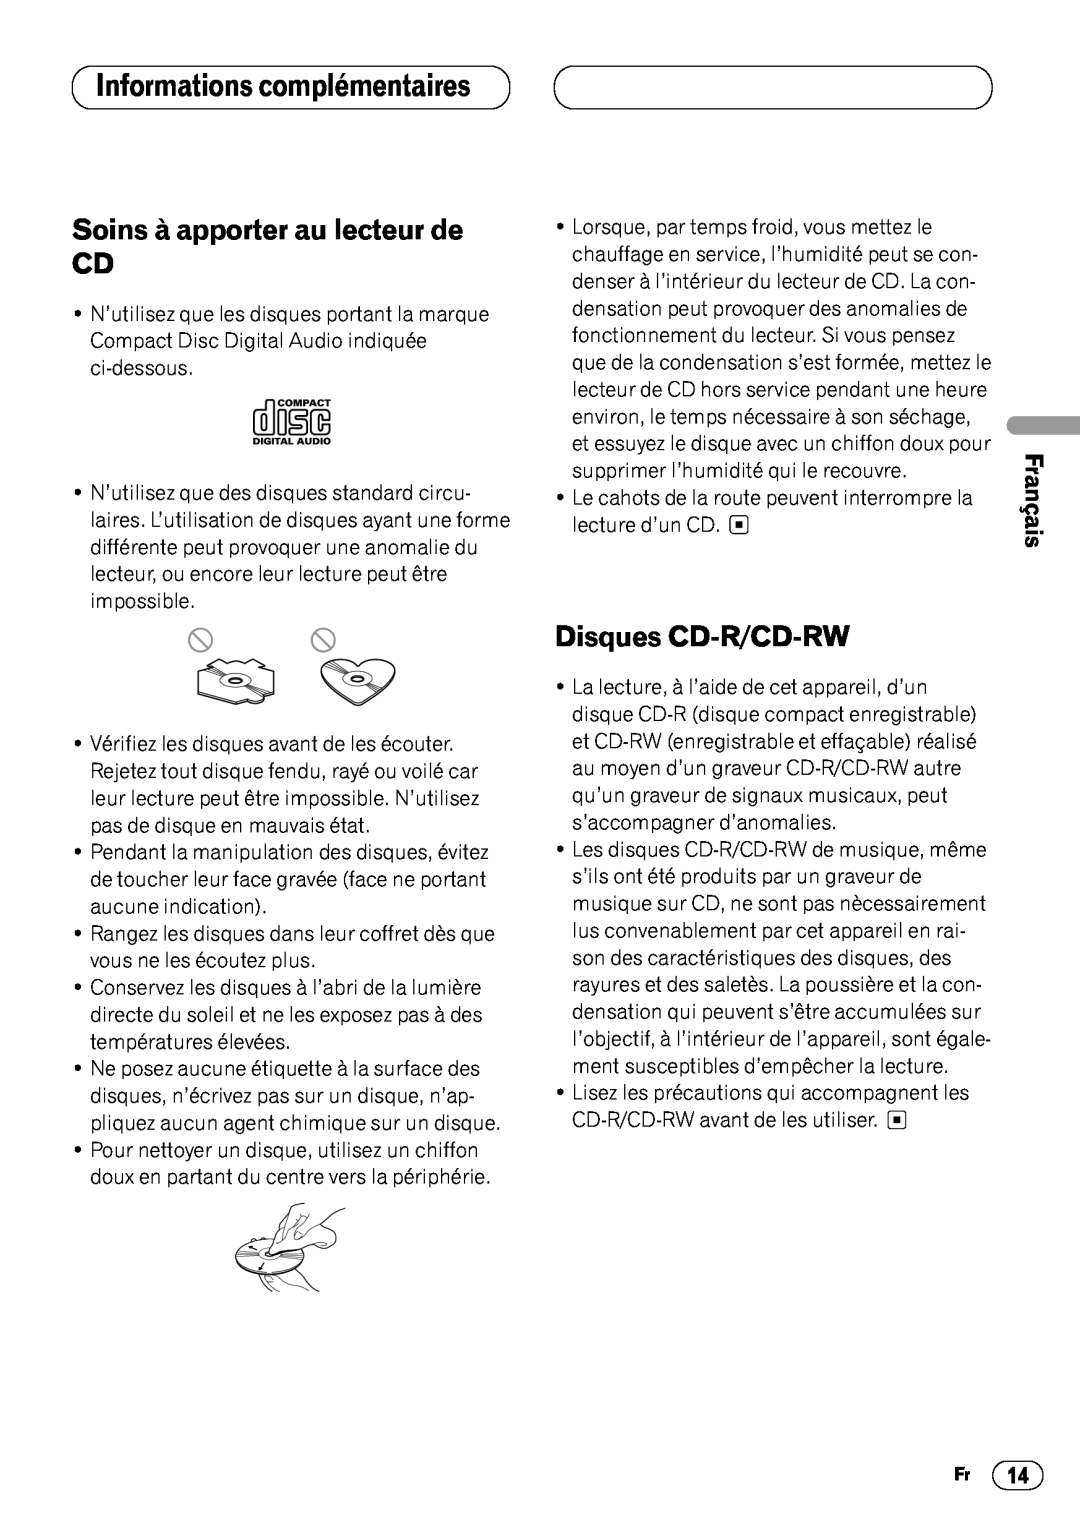 Pioneer DEH-1400 Informations complémentaires, Soins à apporter au lecteur de CD, Disques CD-R/CD-RW, English, Français 